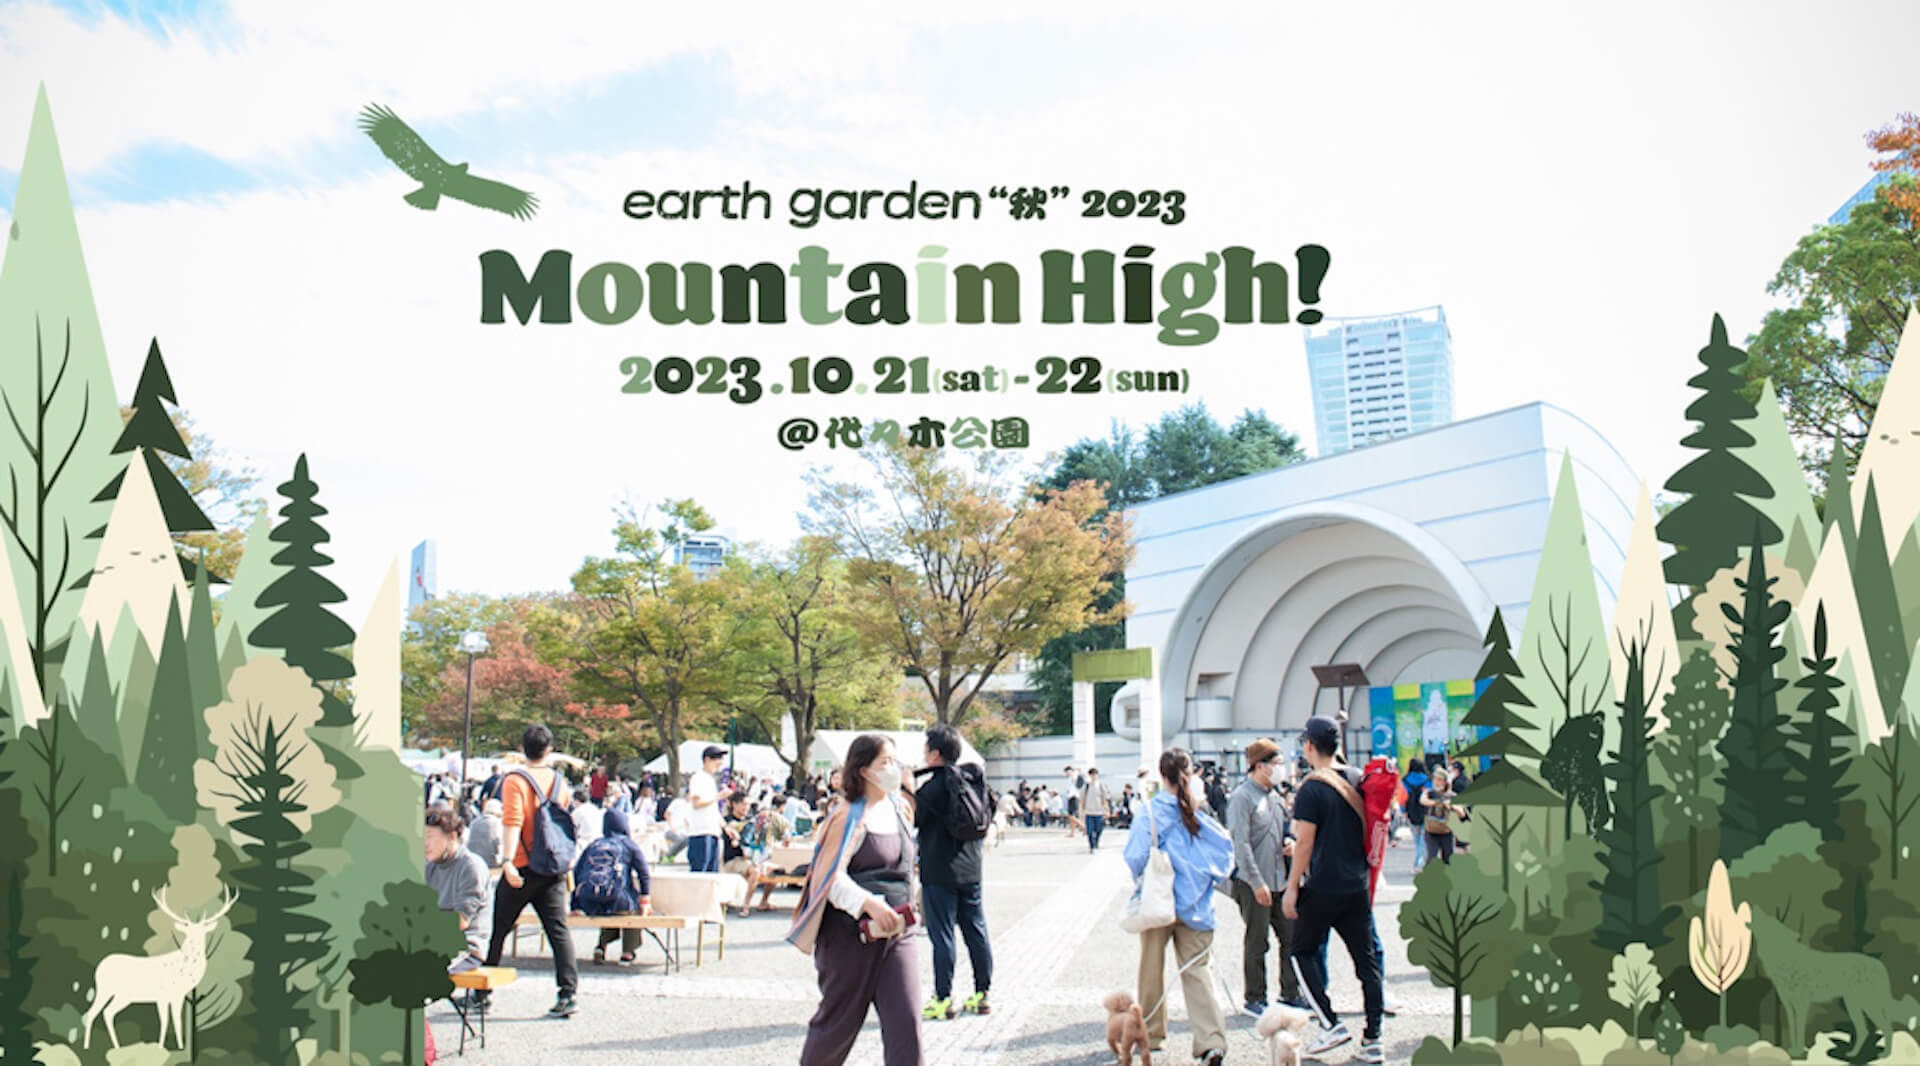 earth garden “秋” 2023 Mountain High!!